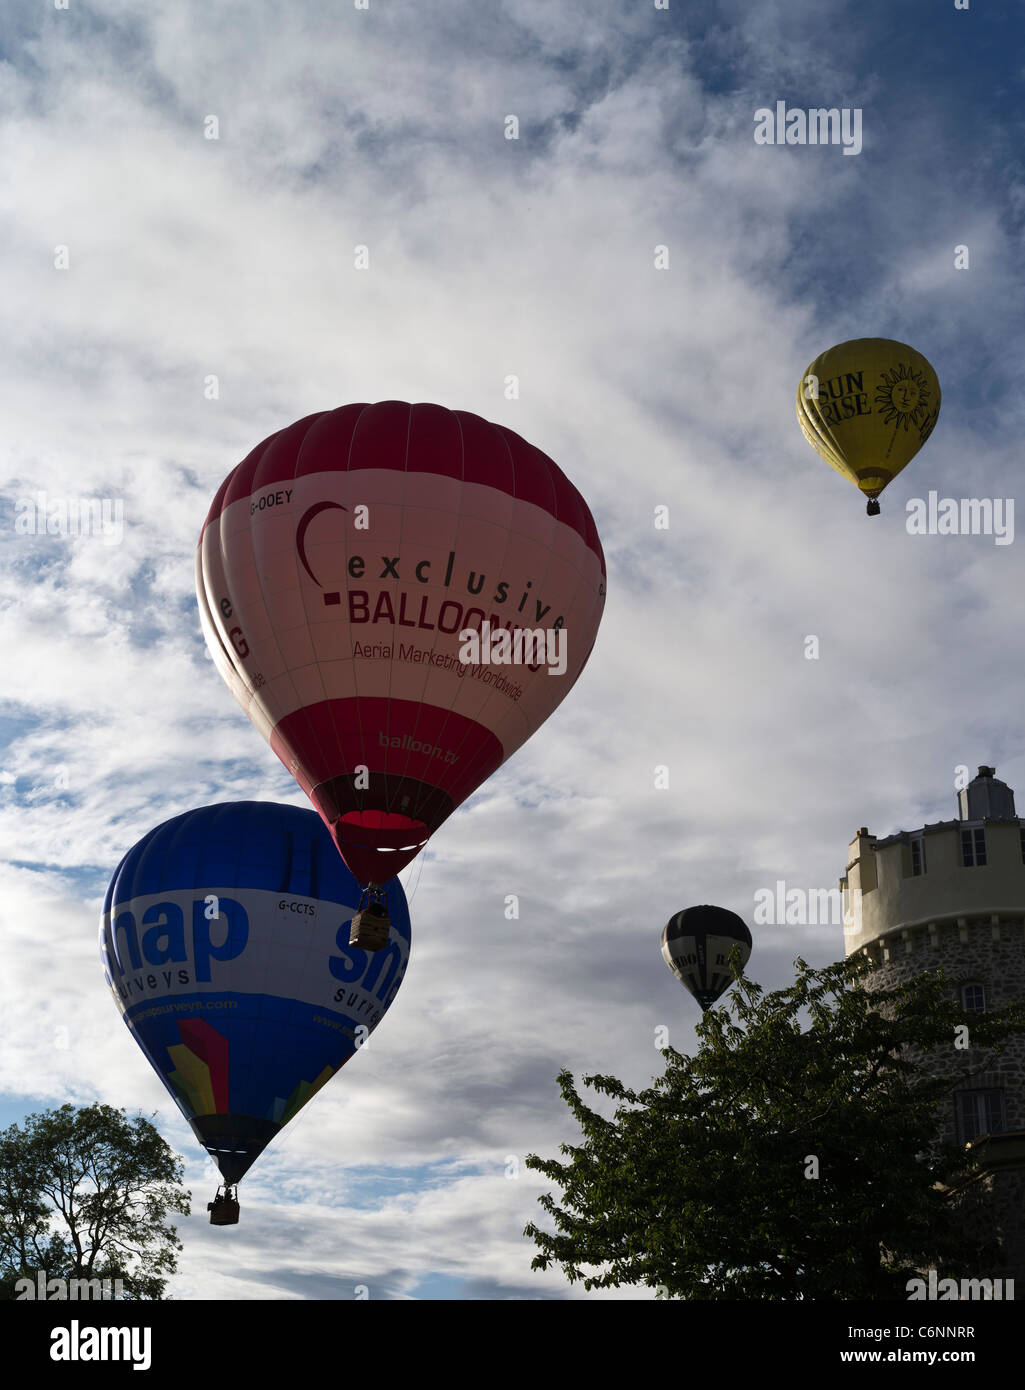 dh Balloon Fiesta CLIFTON BRISTOL Balloon festival mongolfiere Volare sopra l'osservatorio Clifton in cielo fino festival del regno unito Foto Stock